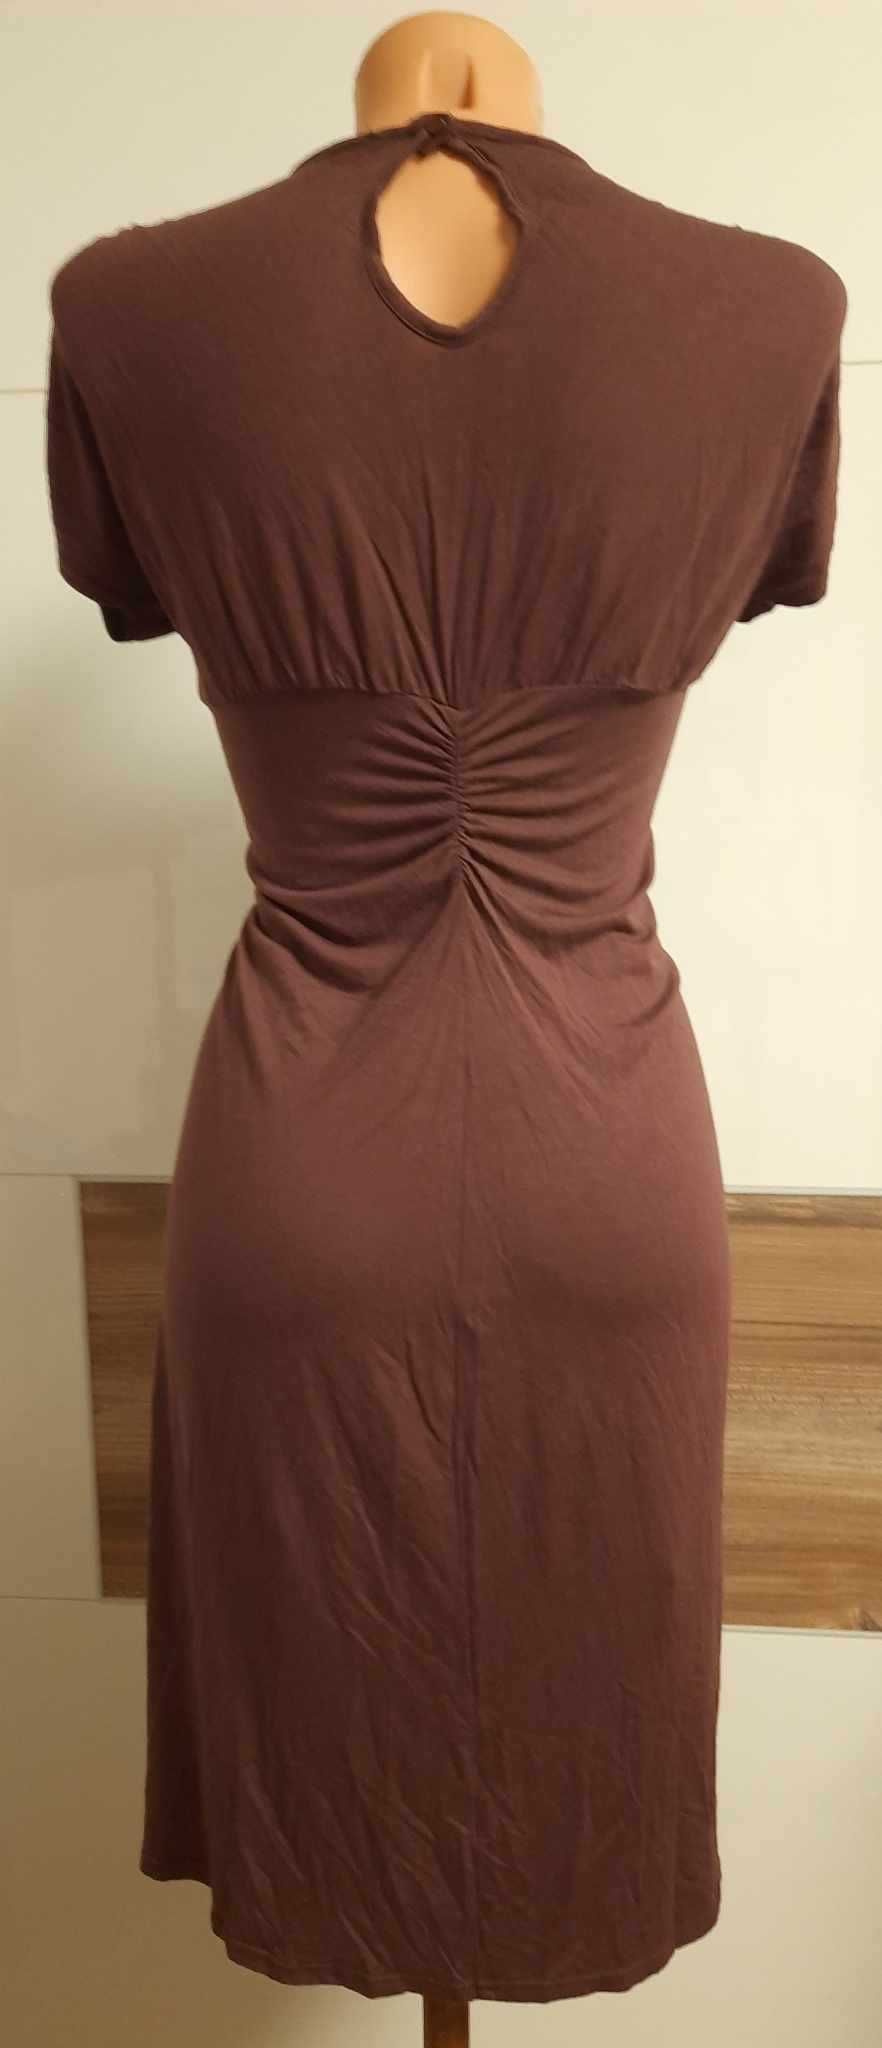 czekoladowa sukienka ATMOSPHERE rozmiar 36-38